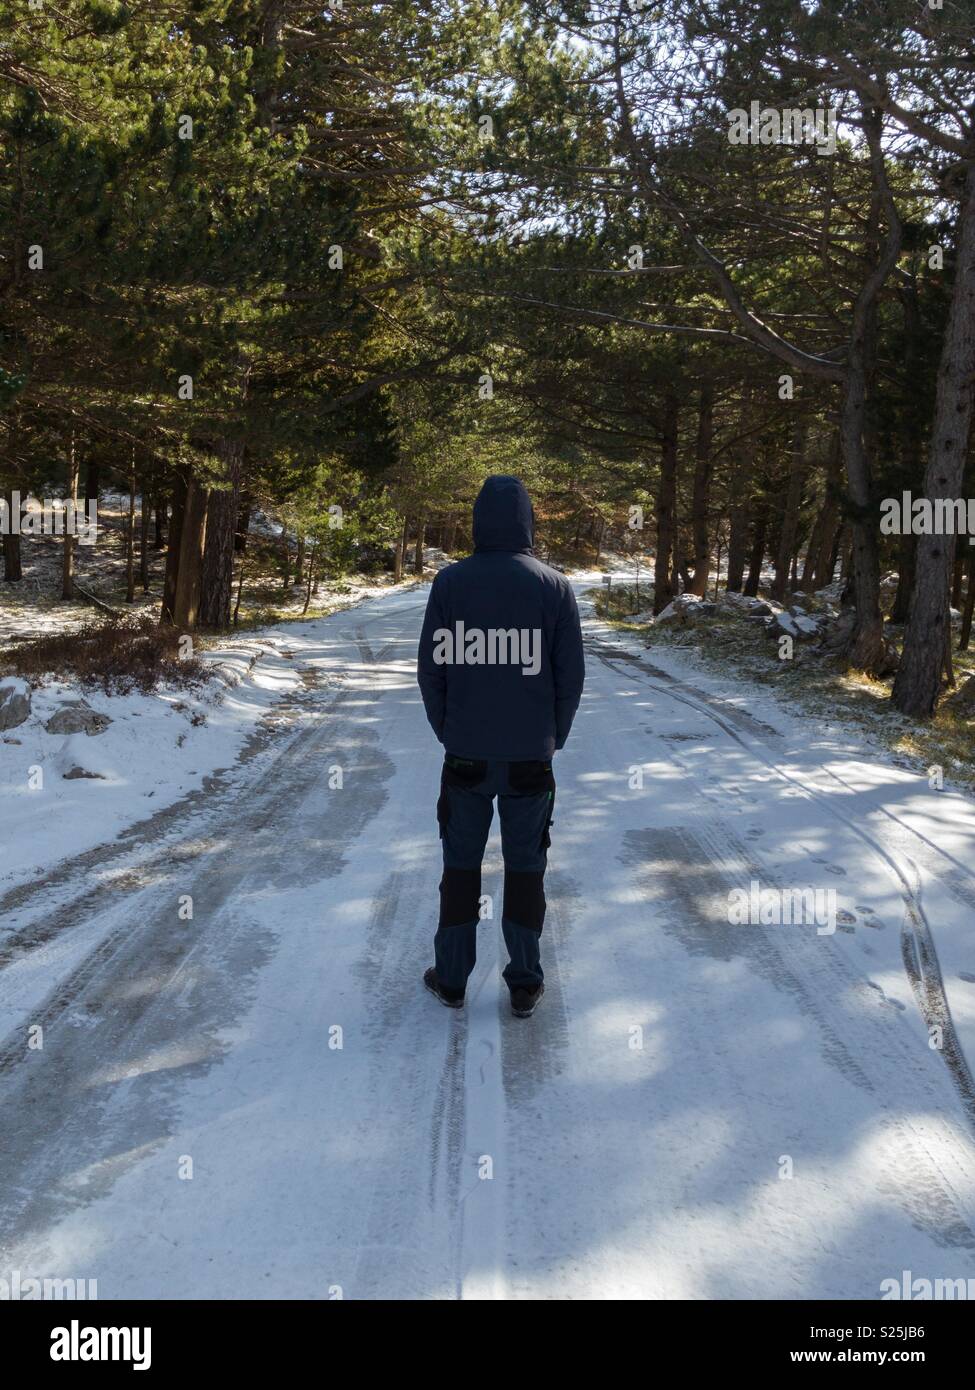 Man in warm jacket walking on frozen mountain road Stock Photo